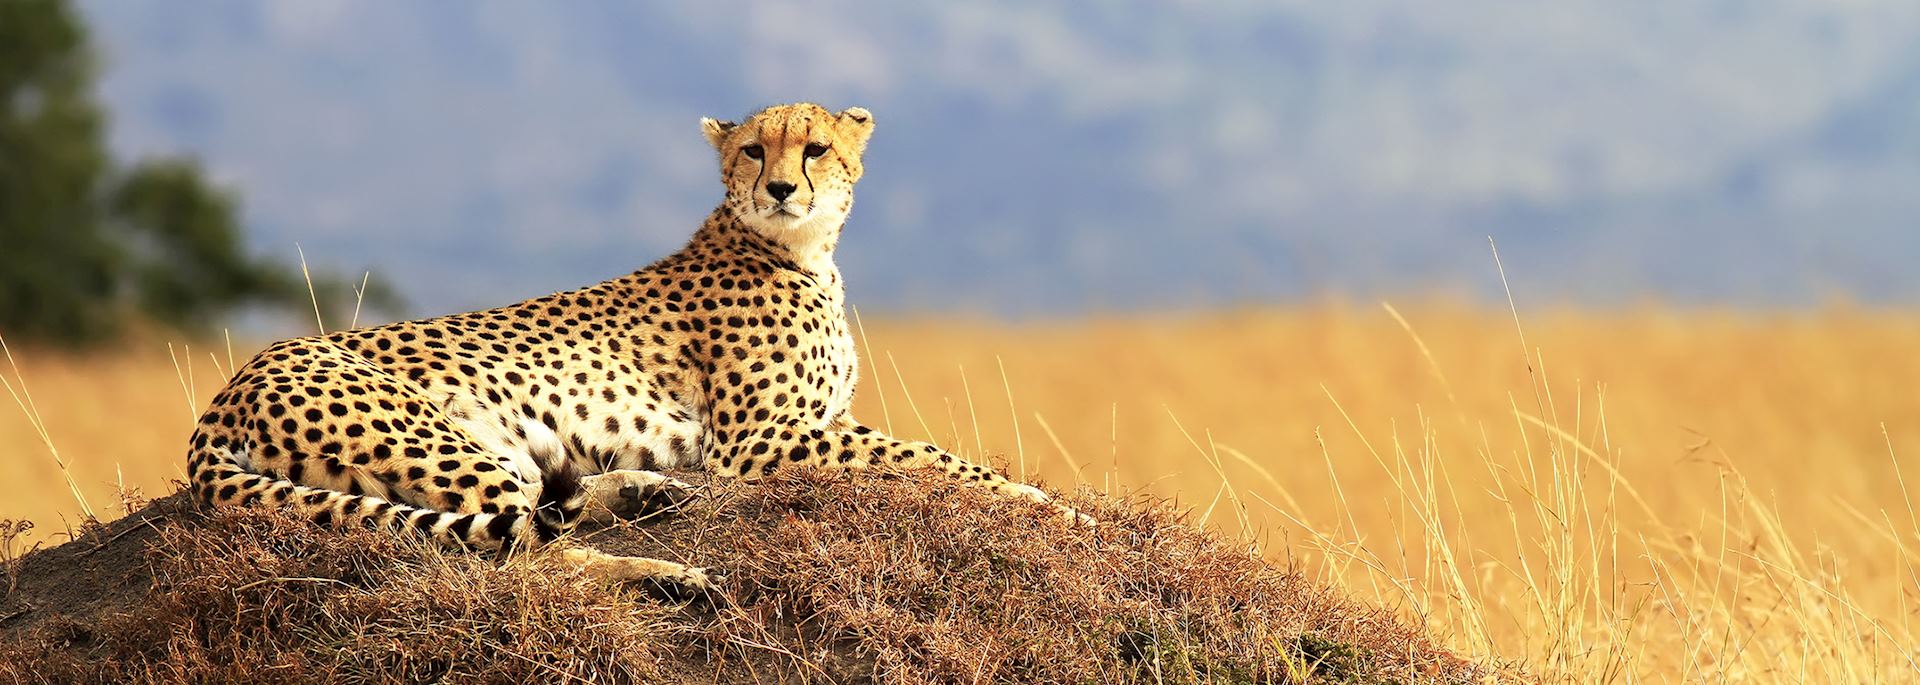 A cheetah in the Masai Mara, Kenya